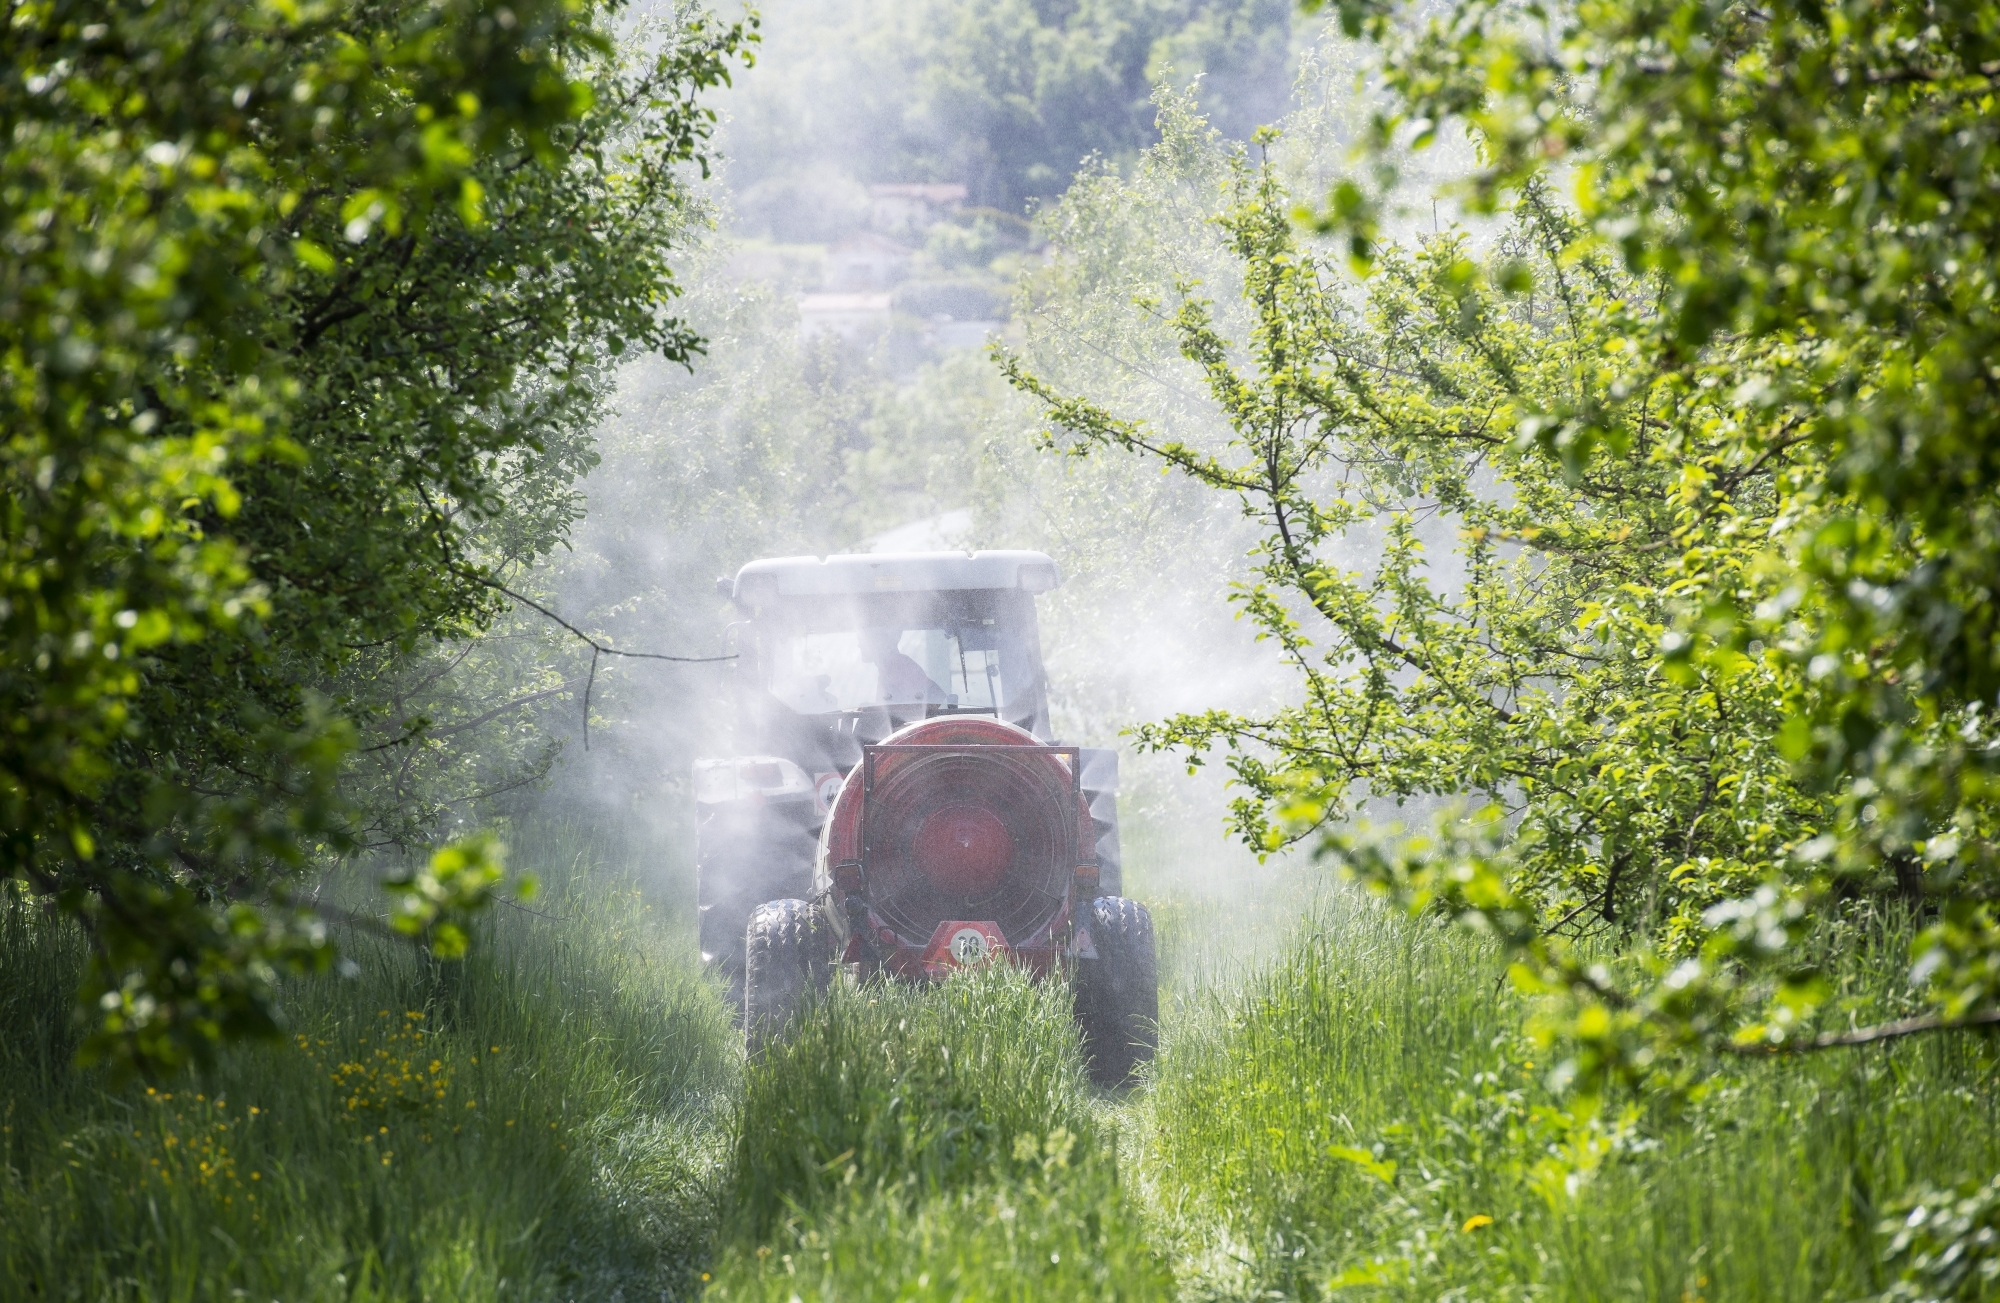 Lors des épandages, les producteurs bio se passent déjà de pesticides pour protéger leurs cultures. Toutefois, tous ne sont pas favorables à cette initiative. Certains craignent que son application nuise à l'agriculture suisse toute entière.